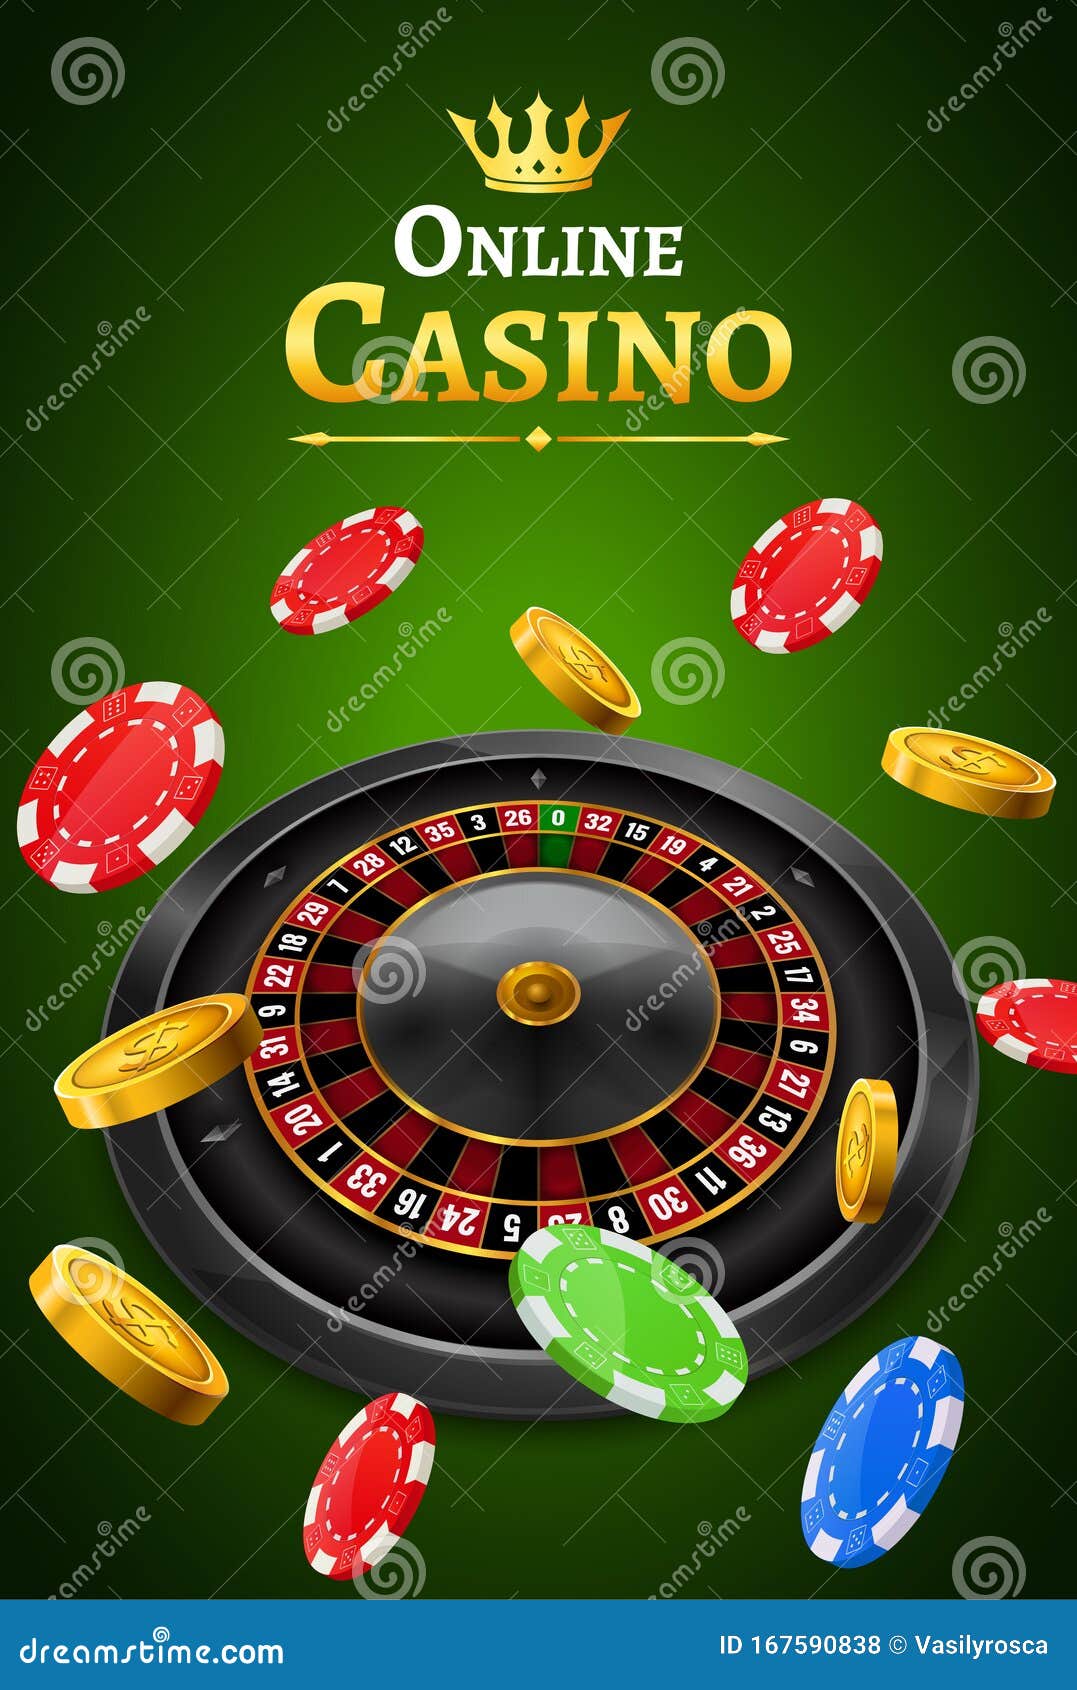 Лозунг для казино поездка в белоруссию казино